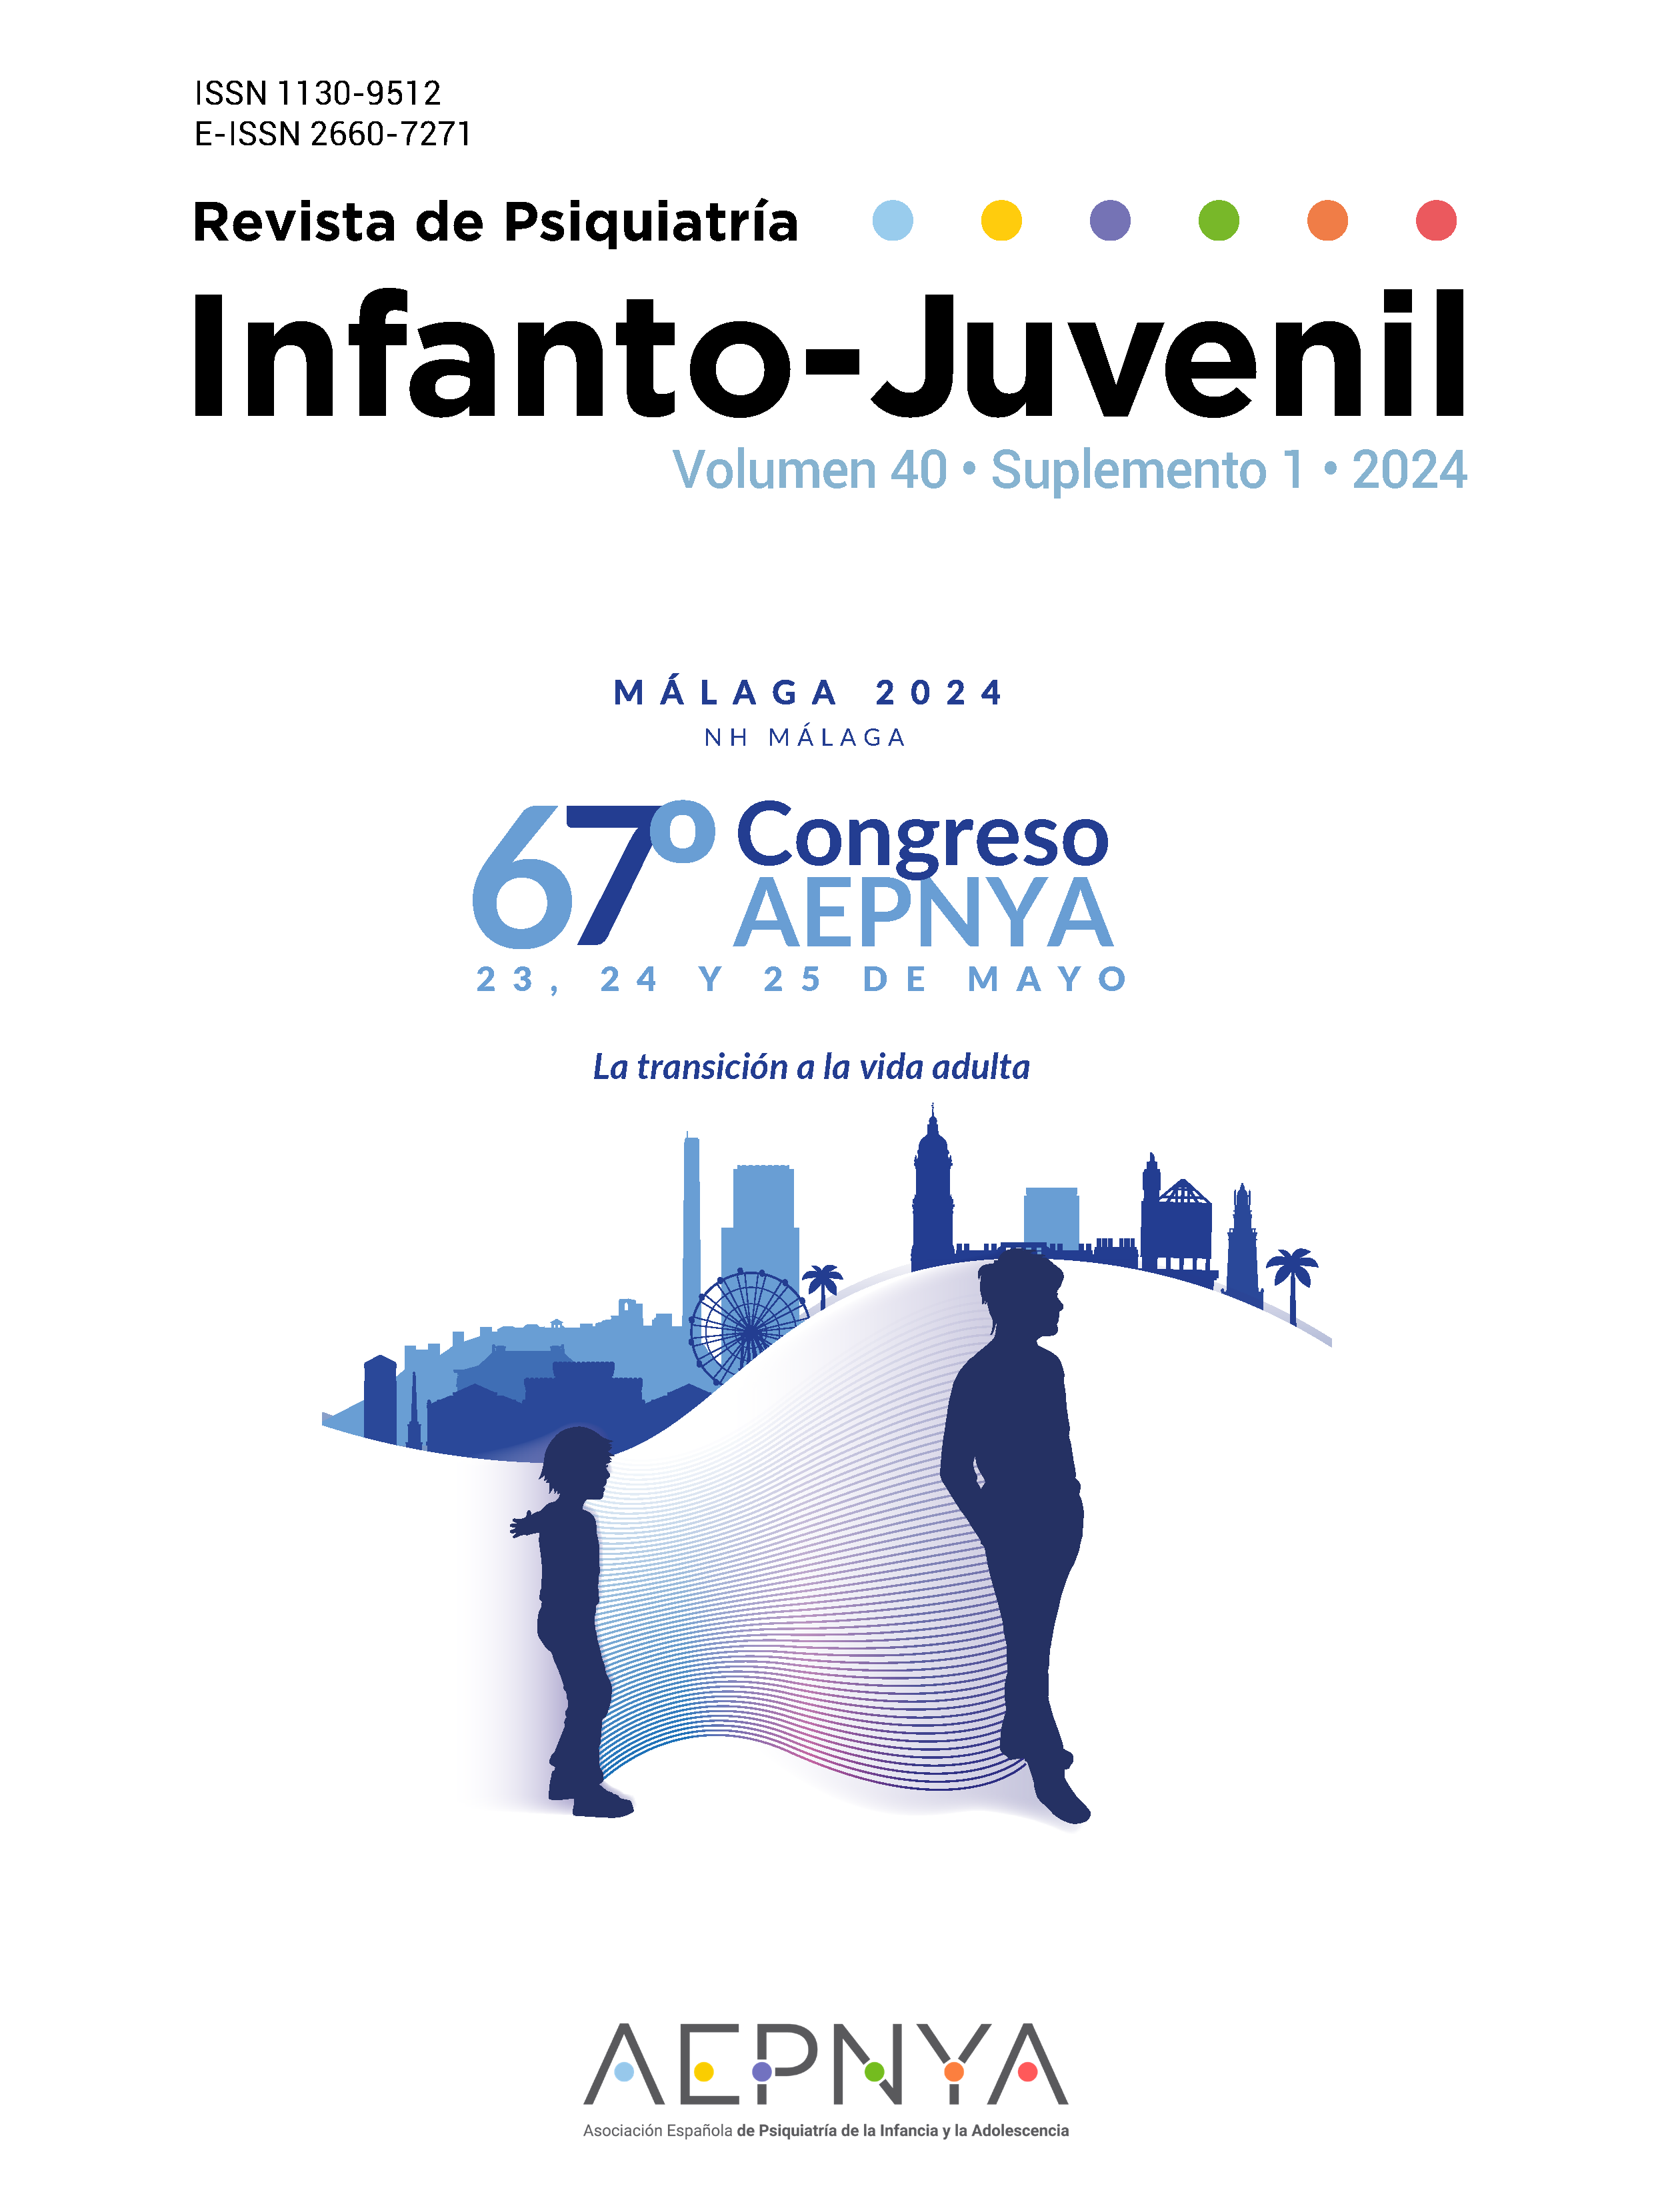 					Ver Vol. 41 Núm. Supl. 1 (2024): 67 Congreso Nacional de la Asociación Española de Psiquiatría de la Infancia y la Adolescencia (AEPNYA)
				